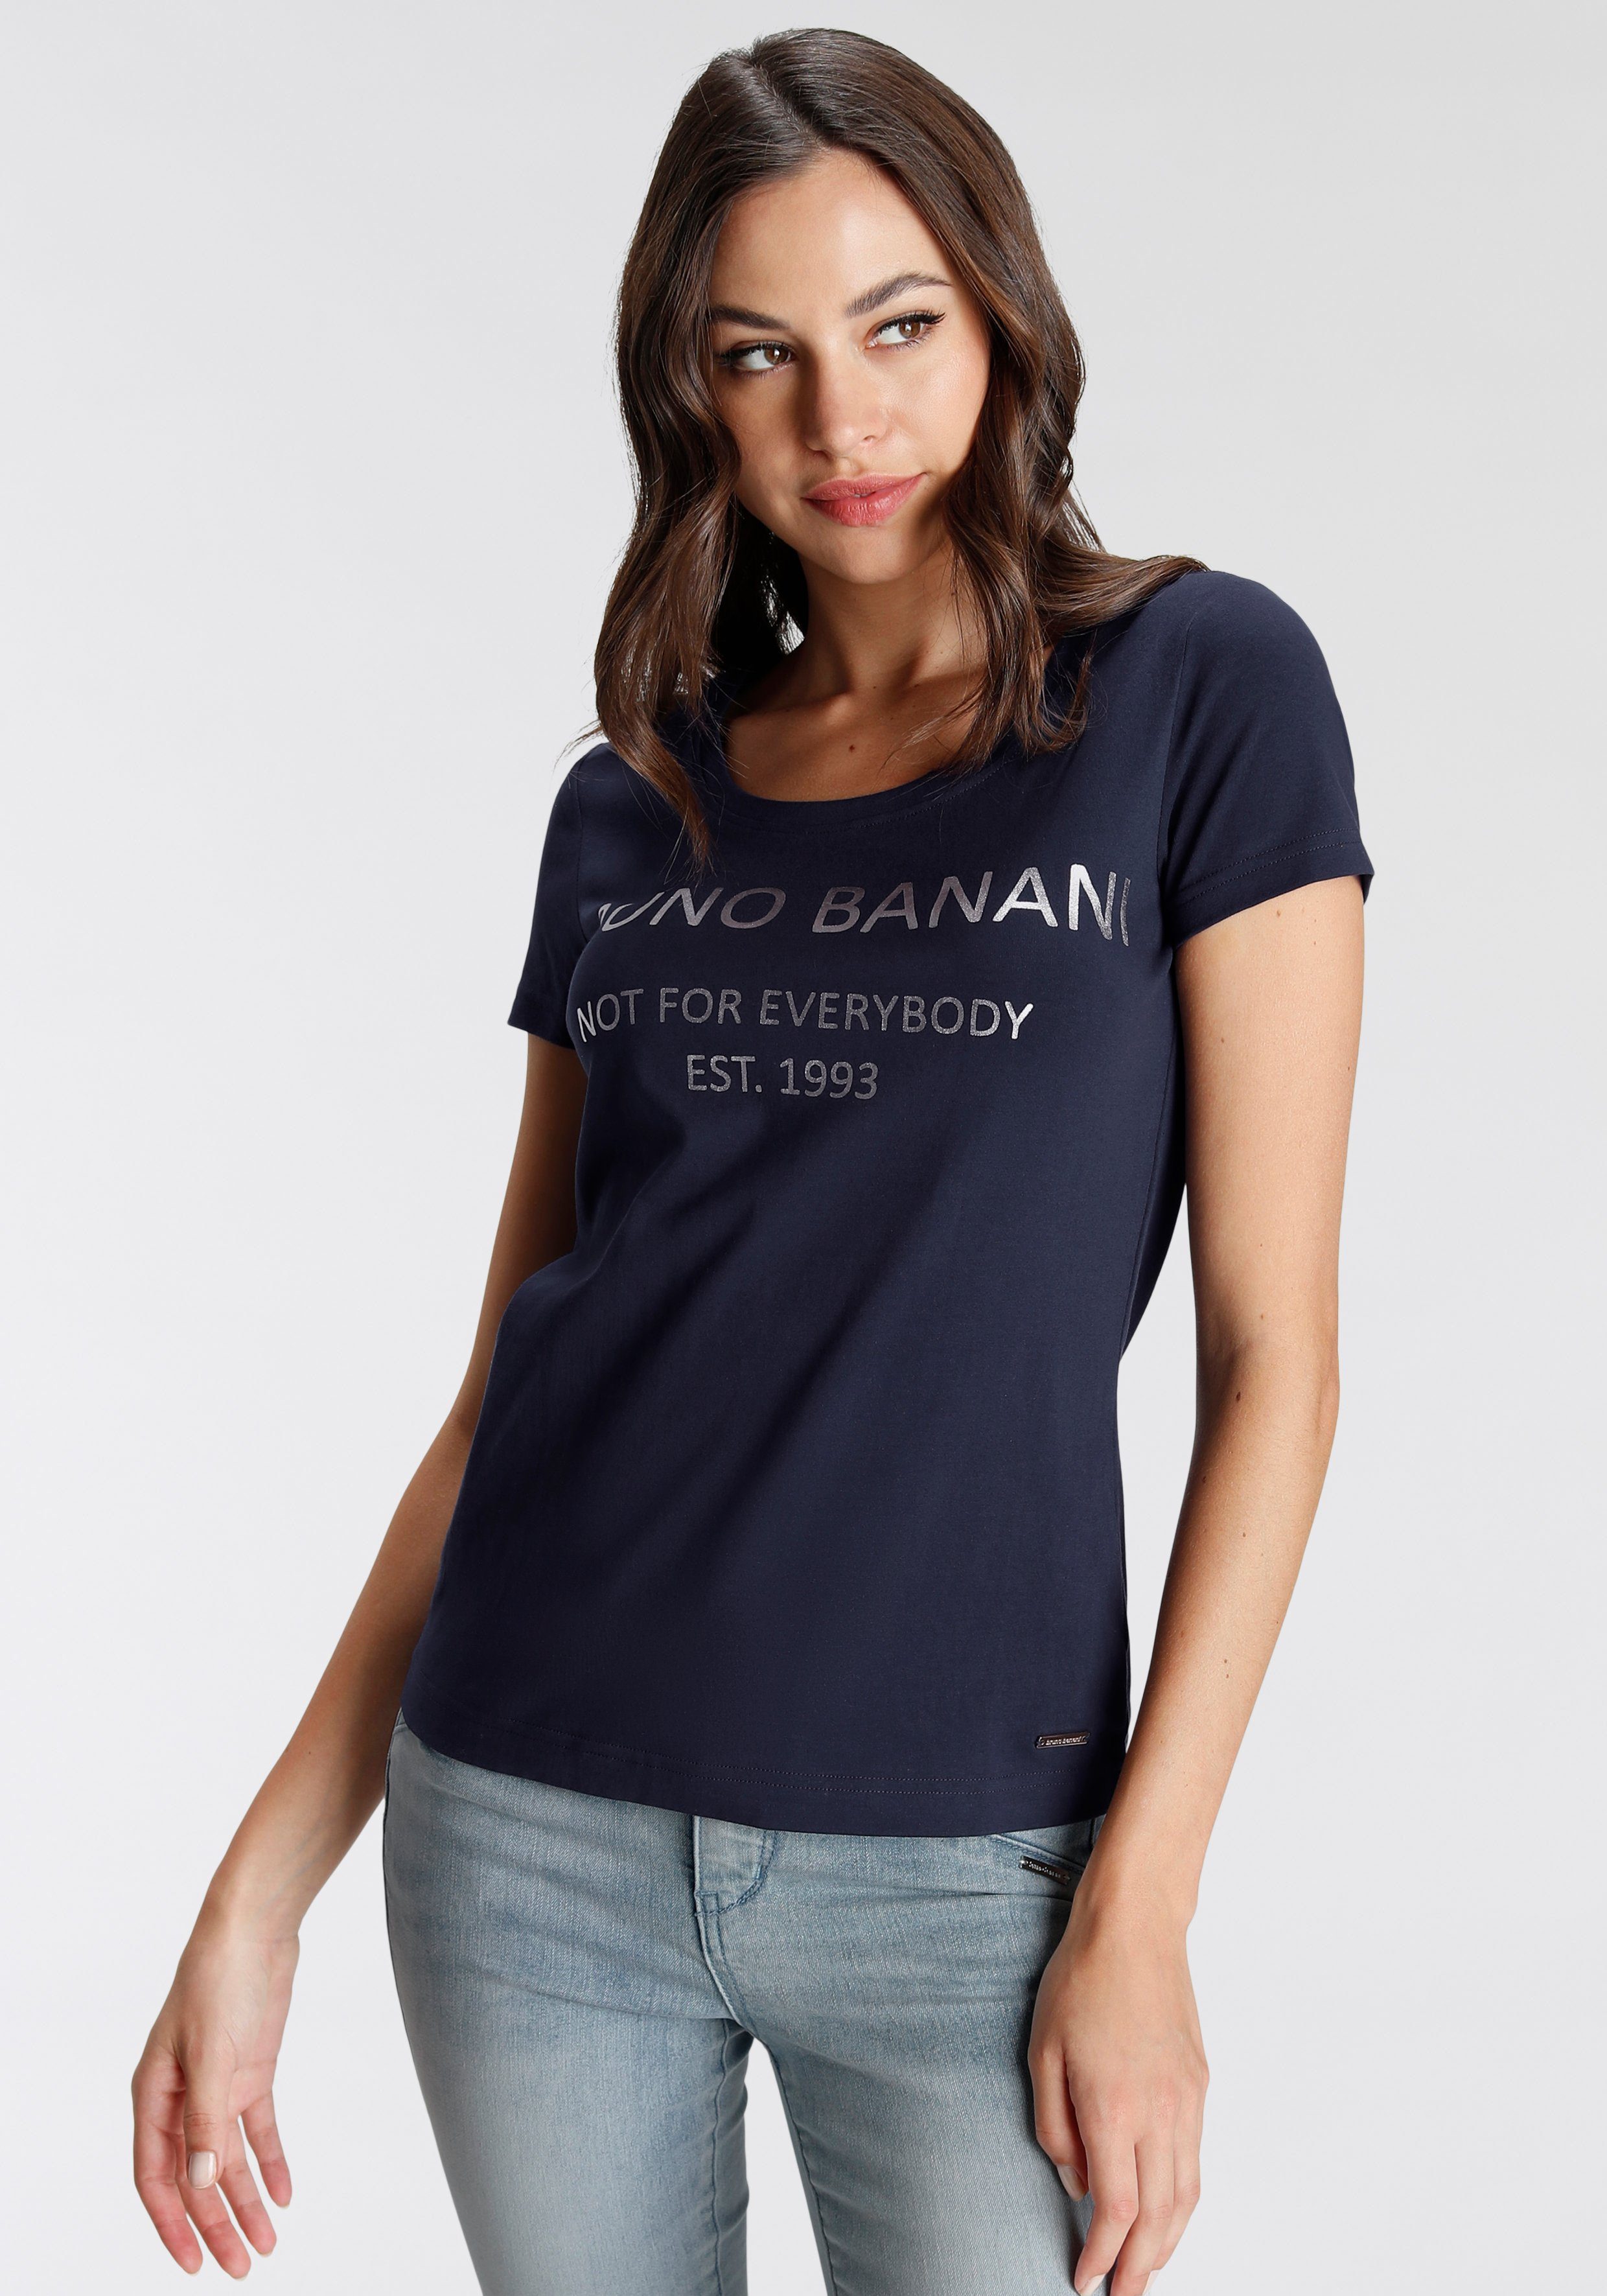 Bruno Banani T-Shirt mit goldfarbenem marine KOLLEKTION NEUE Logodruck